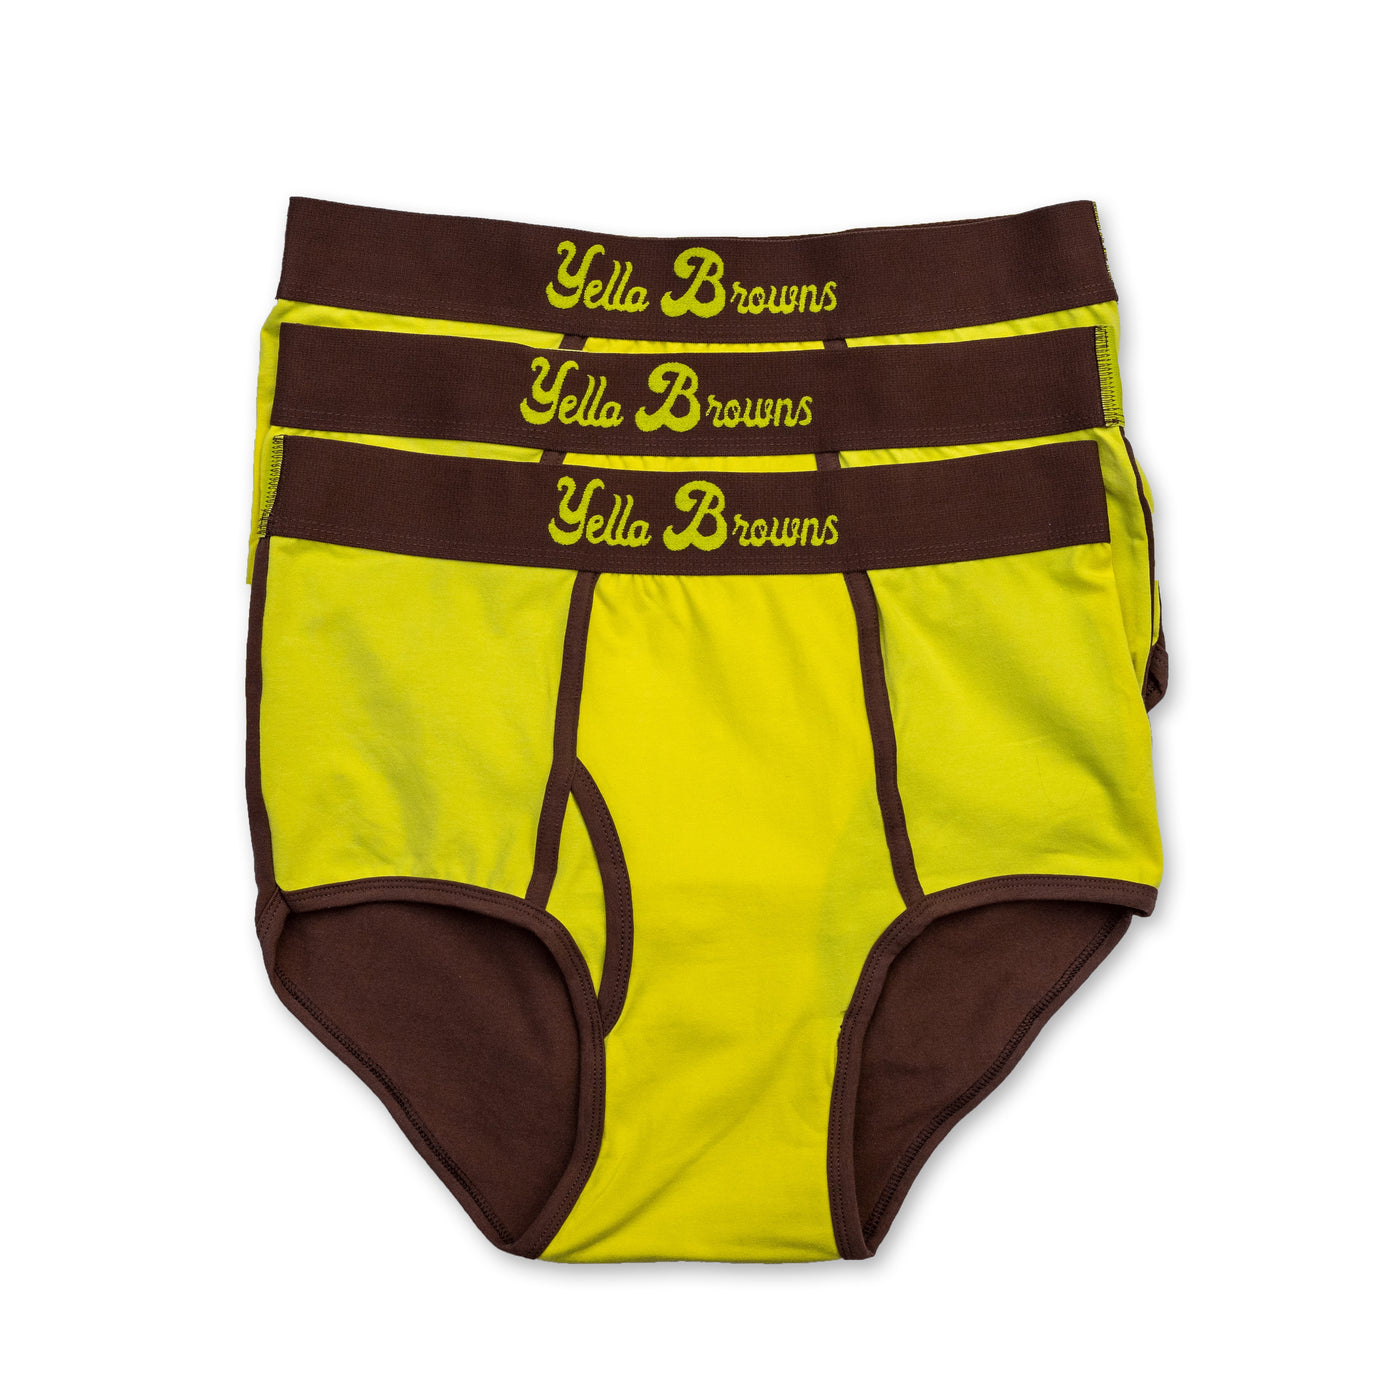  Yellow - Men's Underwear Briefs / Men's Underwear: Clothing,  Shoes & Accessories